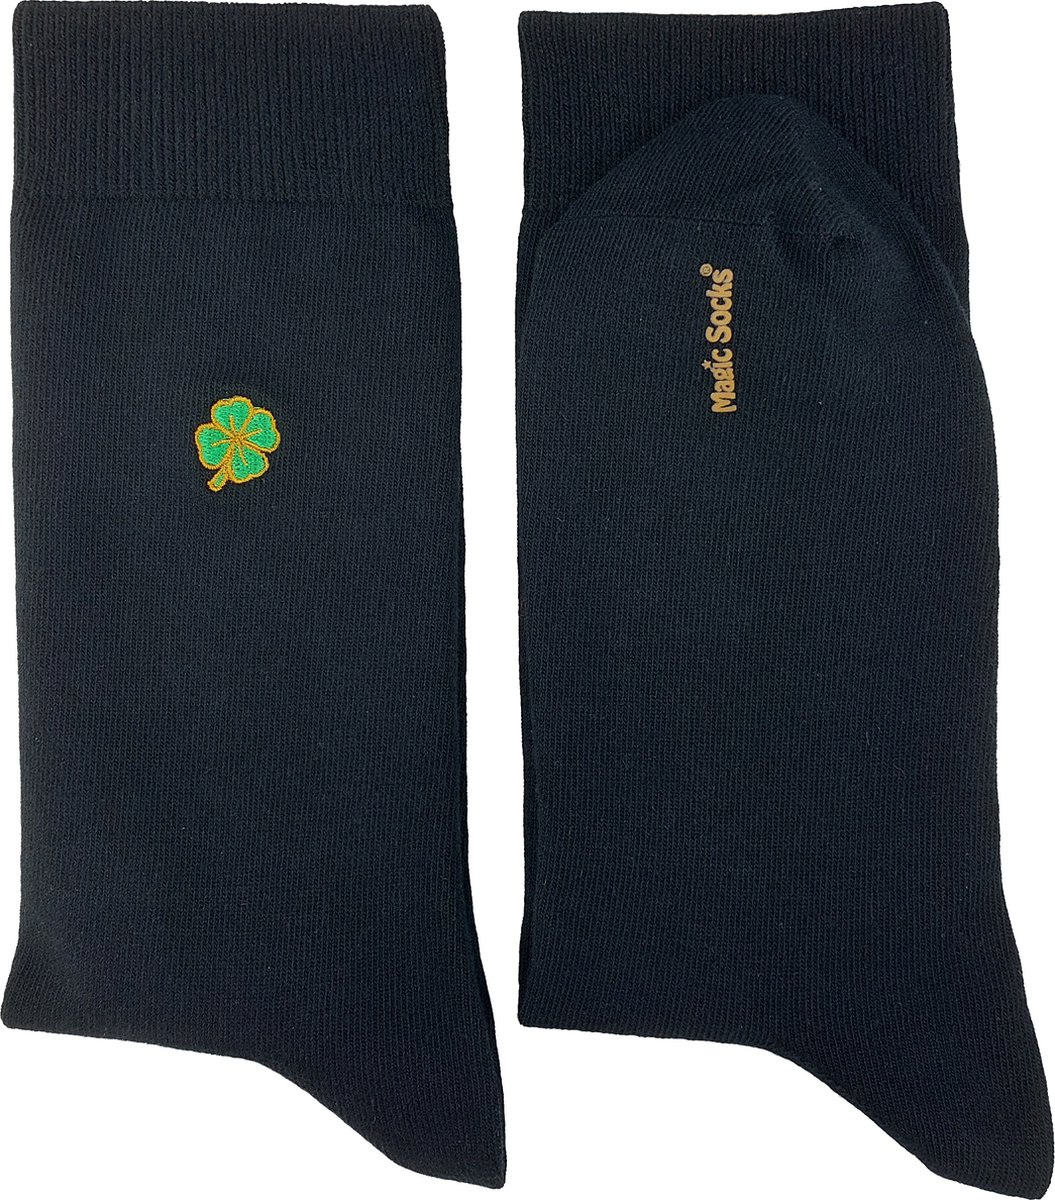 Magic Socks - Herensokken - zwarte sokken met klavertje vier borduurwerk – zacht en ademend